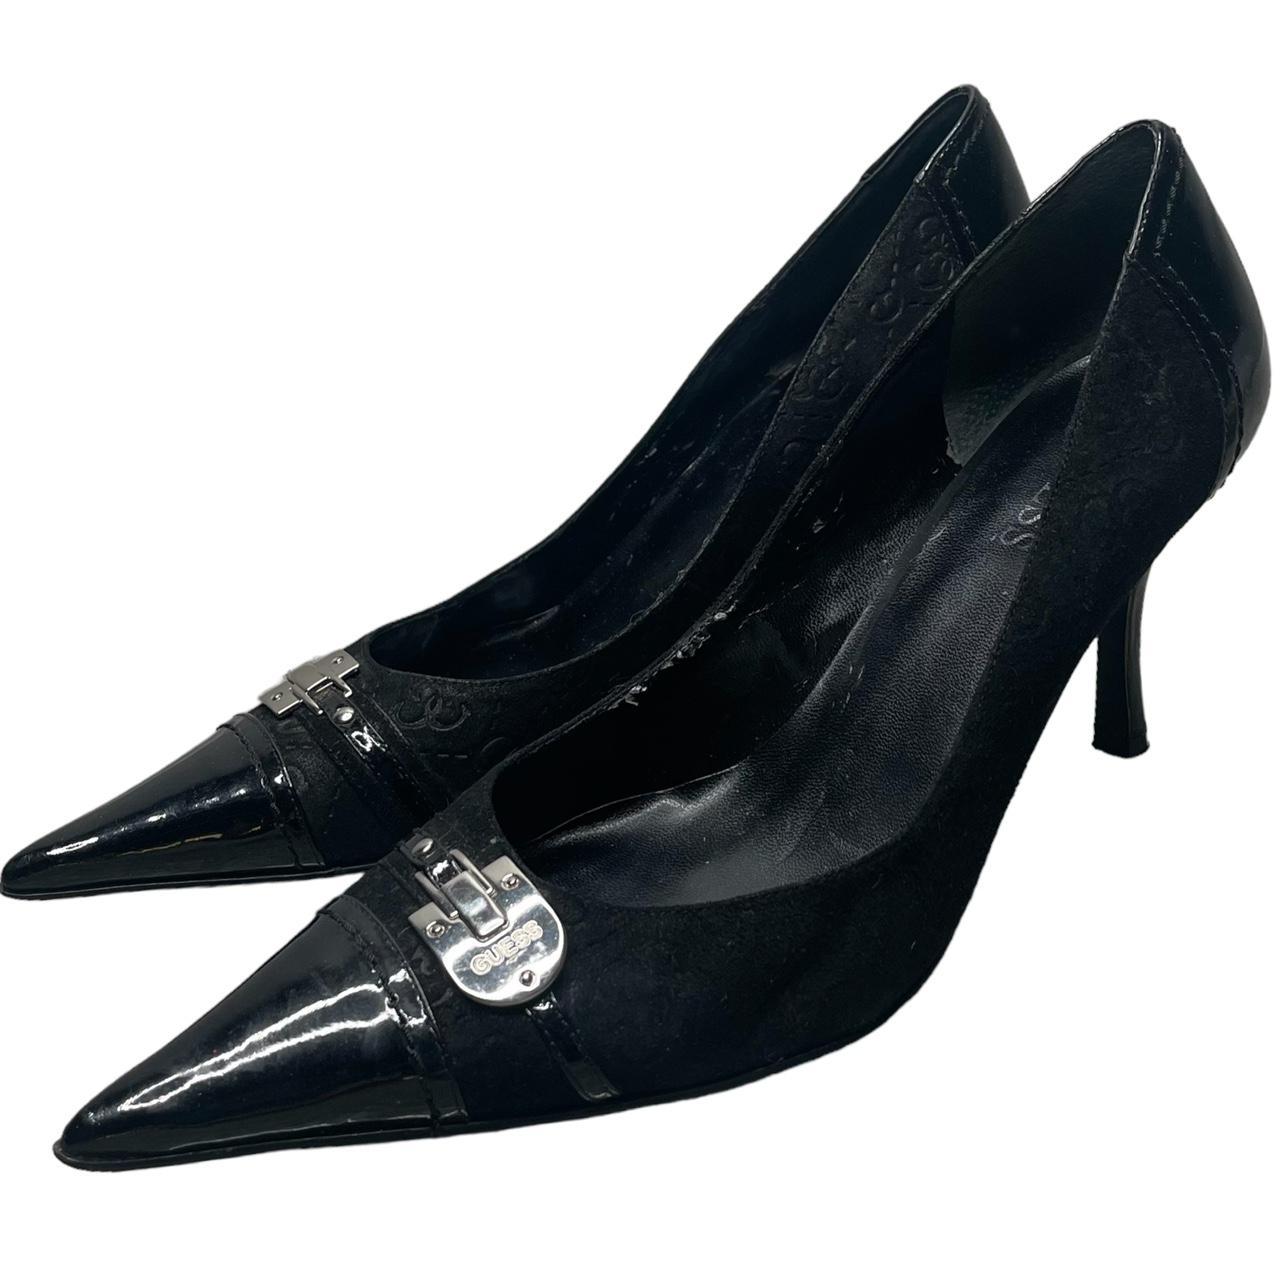 Black Vintage Guess kitten Heels. The heels have an... - Depop